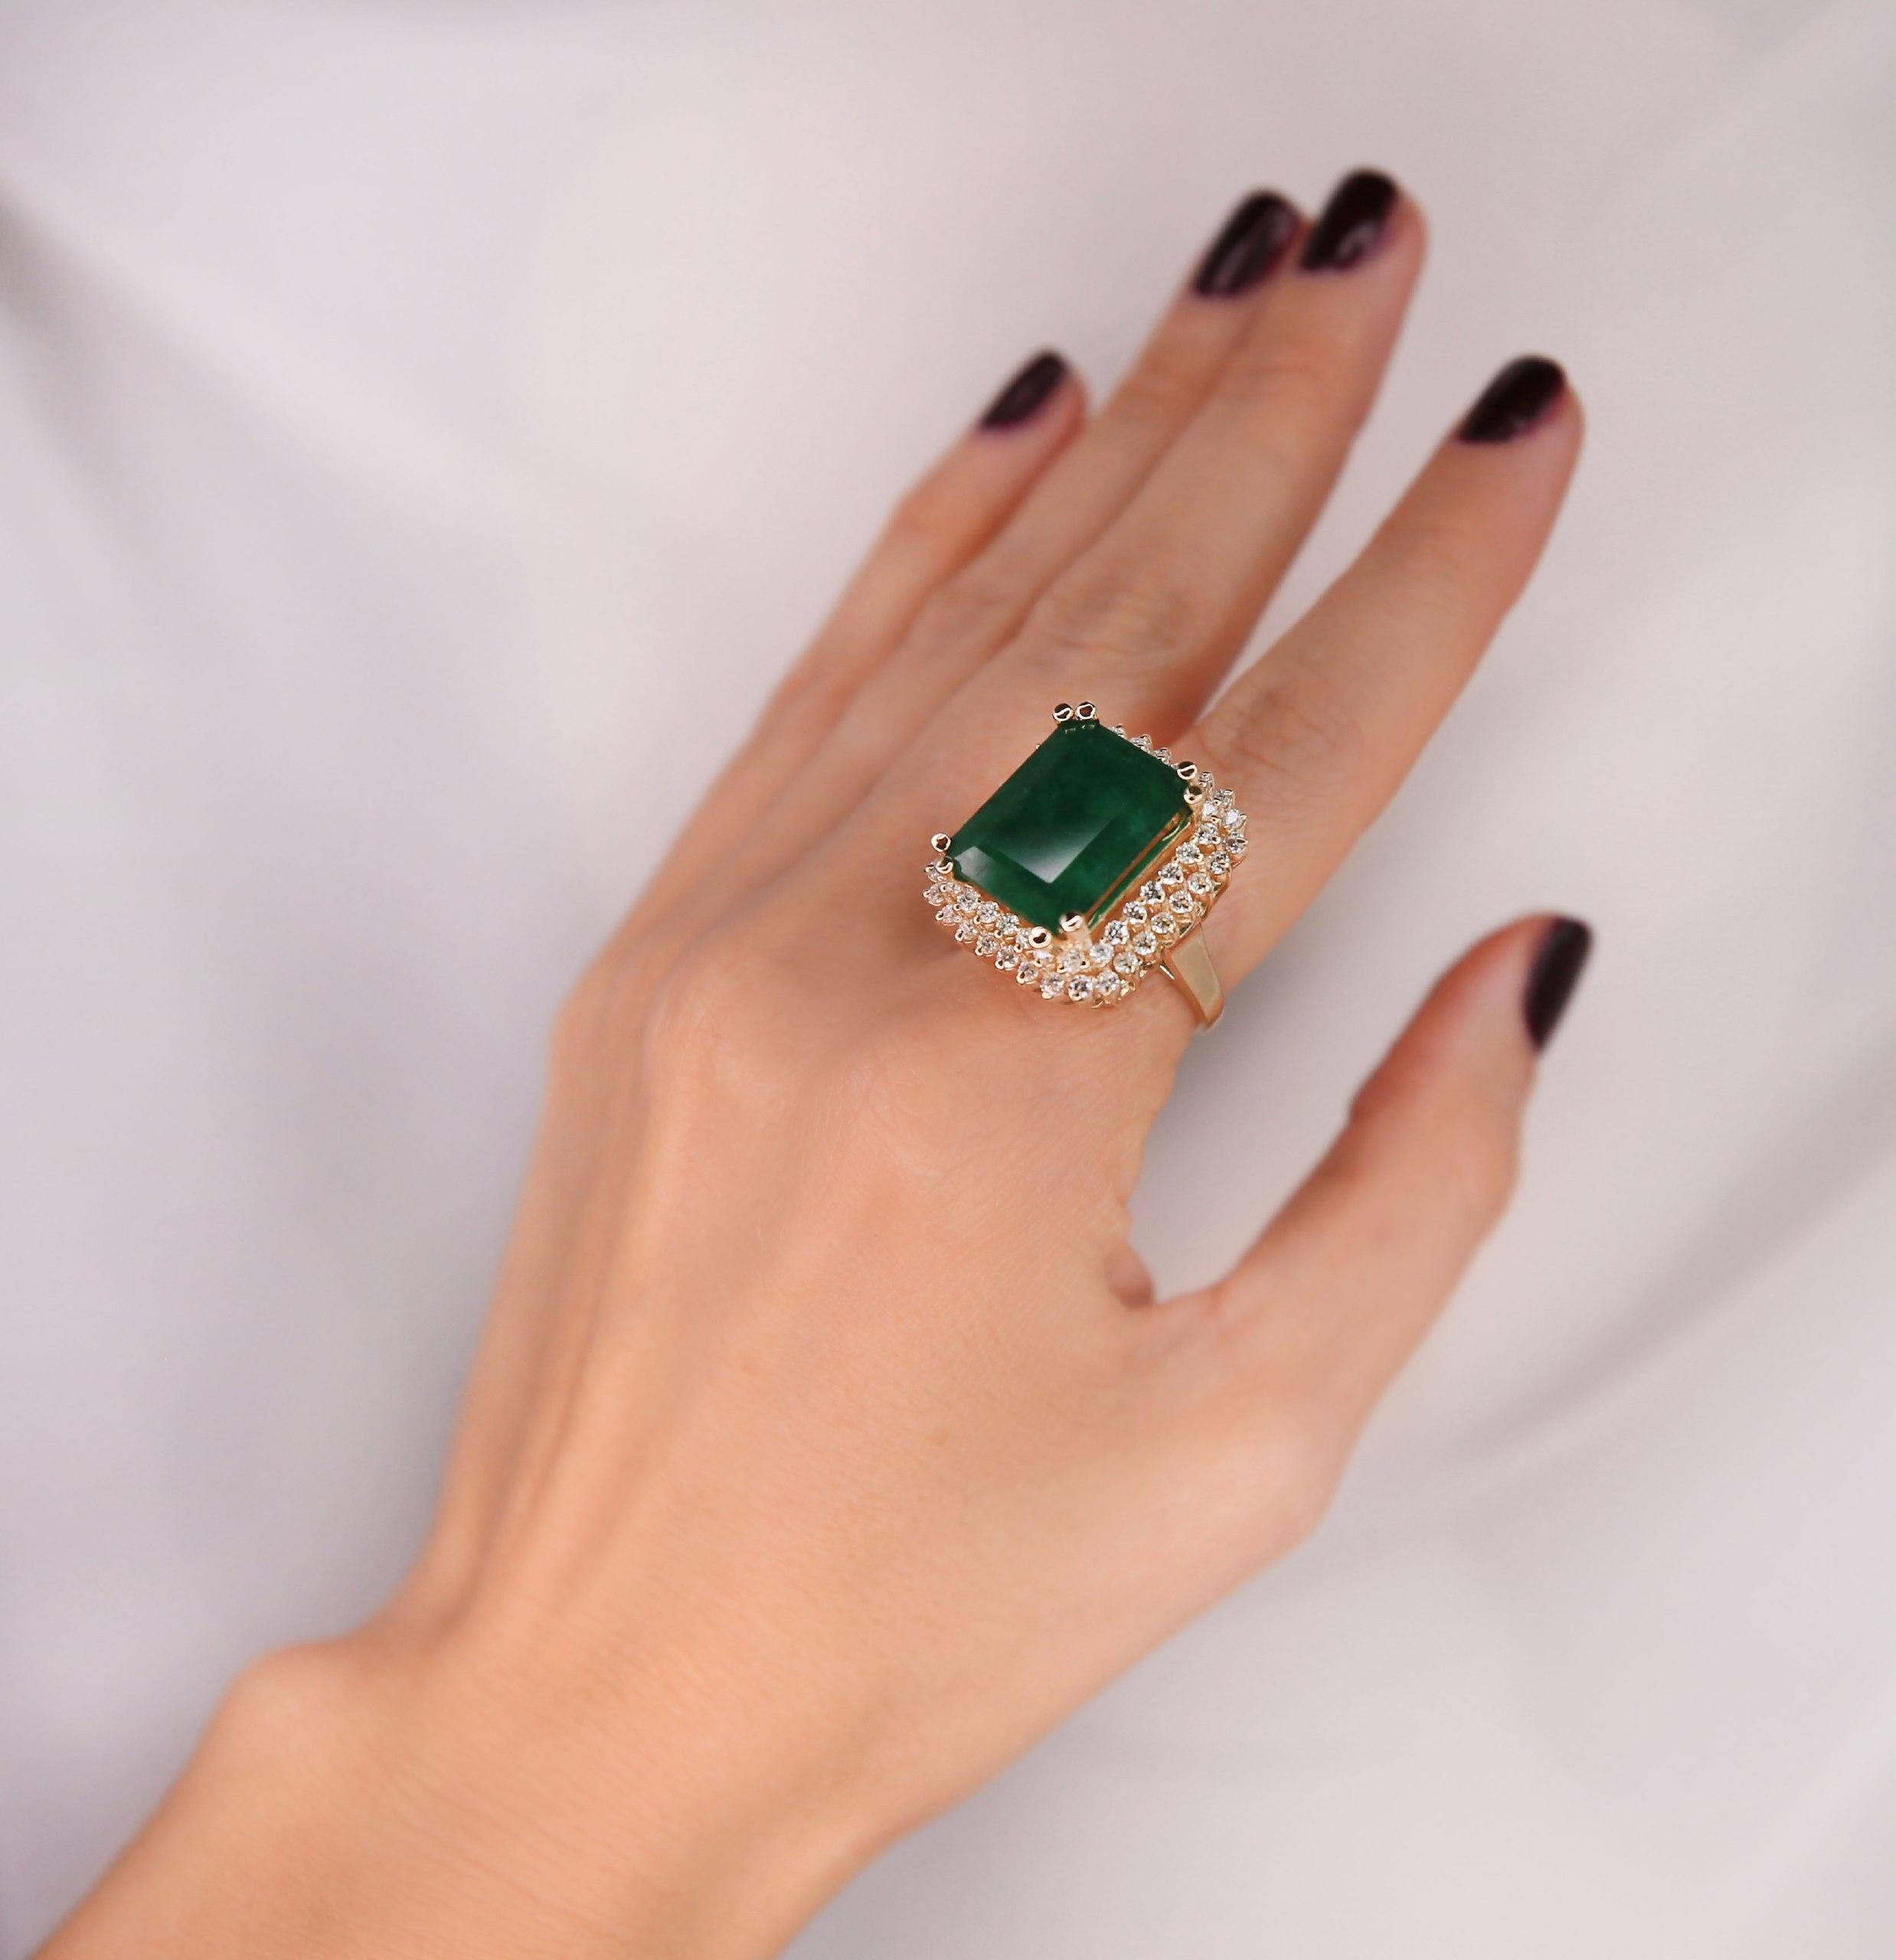 Ring Gelbgold 18 K

Gesamtgewicht des Rings: 9,2 Gramm
Smaragd Gewicht: 5,51 Karat (13,00x11,00 Millimeter)
Diamantgewicht: 1,40 Karat (Farbe F-G, Reinheit VS2-SI1)

NATKINA ist eine Genfer Schmuckmarke, die auf alte Schweizer Schmucktraditionen